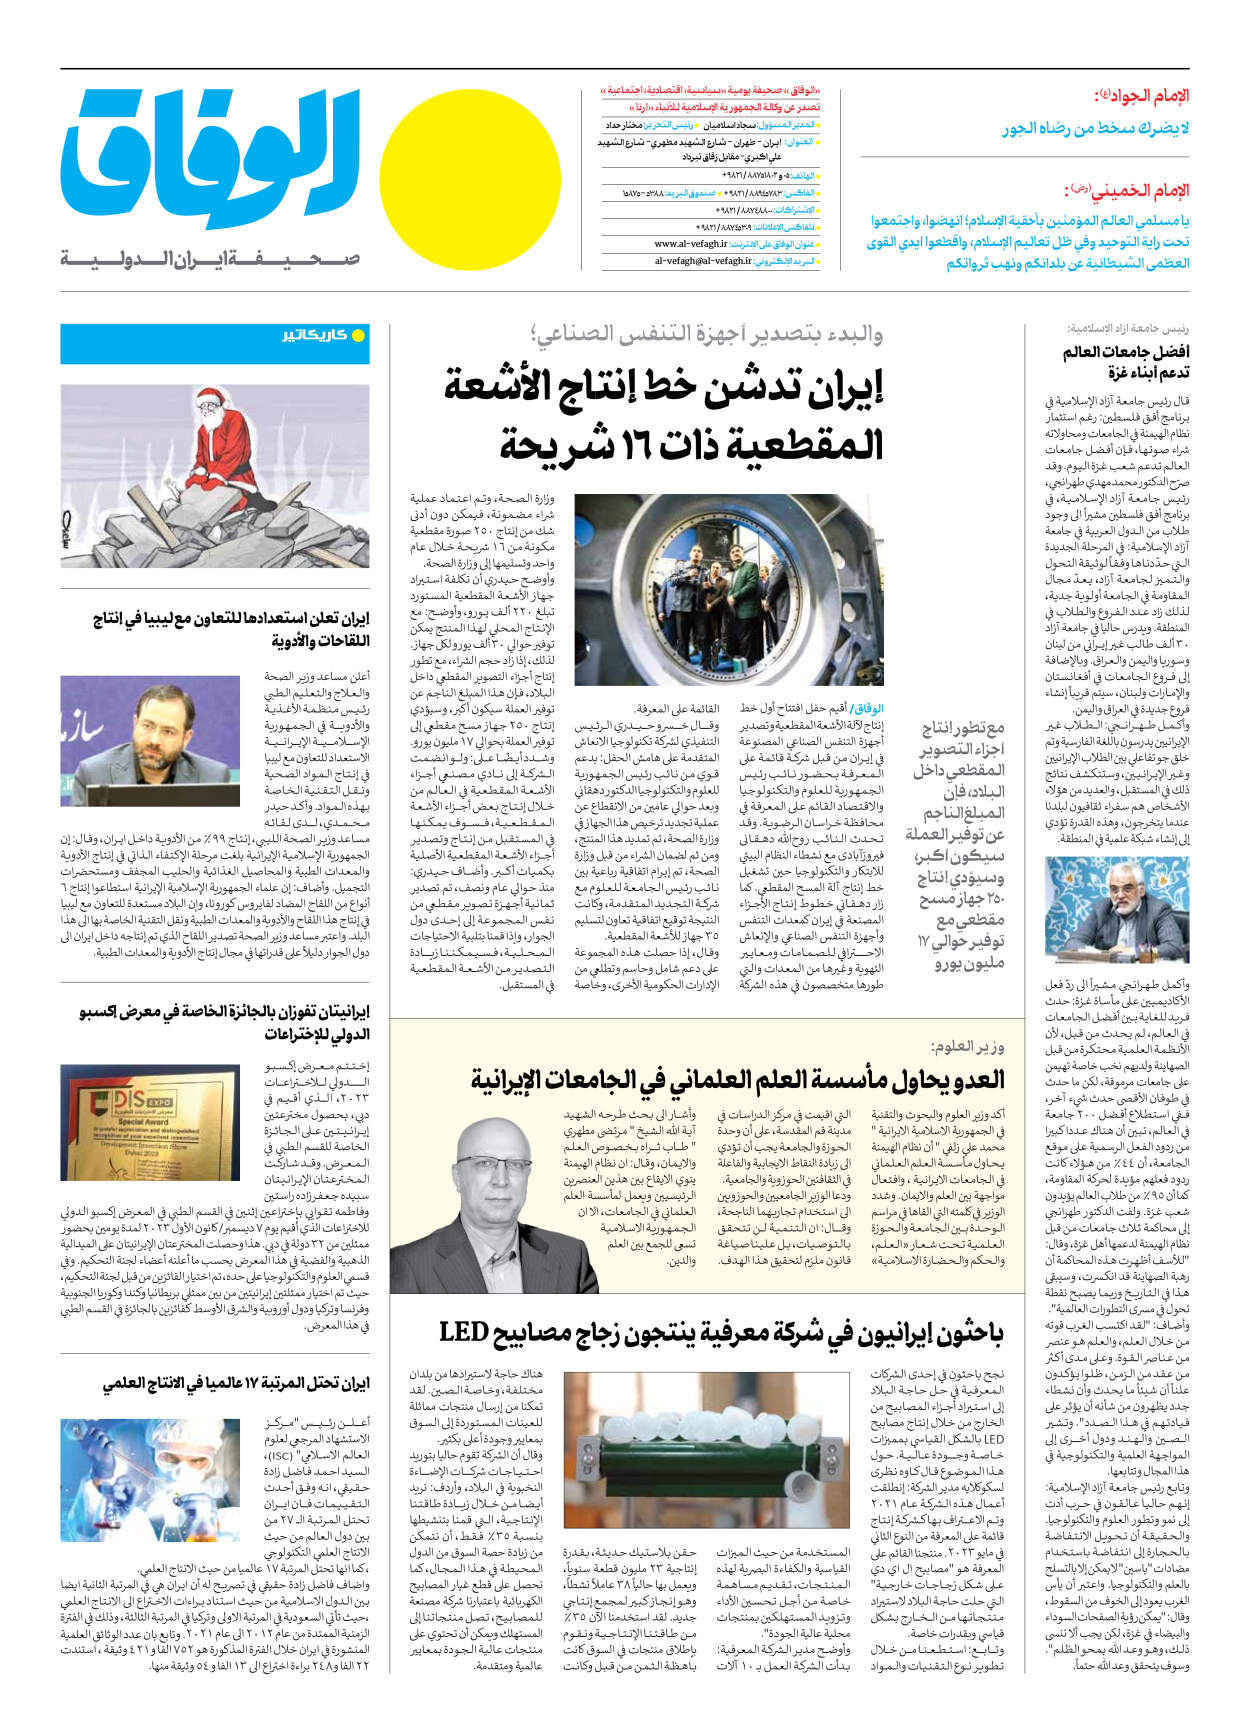 صحیفة ایران الدولیة الوفاق - العدد سبعة آلاف وأربعمائة وسبعة - ٢٣ ديسمبر ٢٠٢٣ - الصفحة ۸